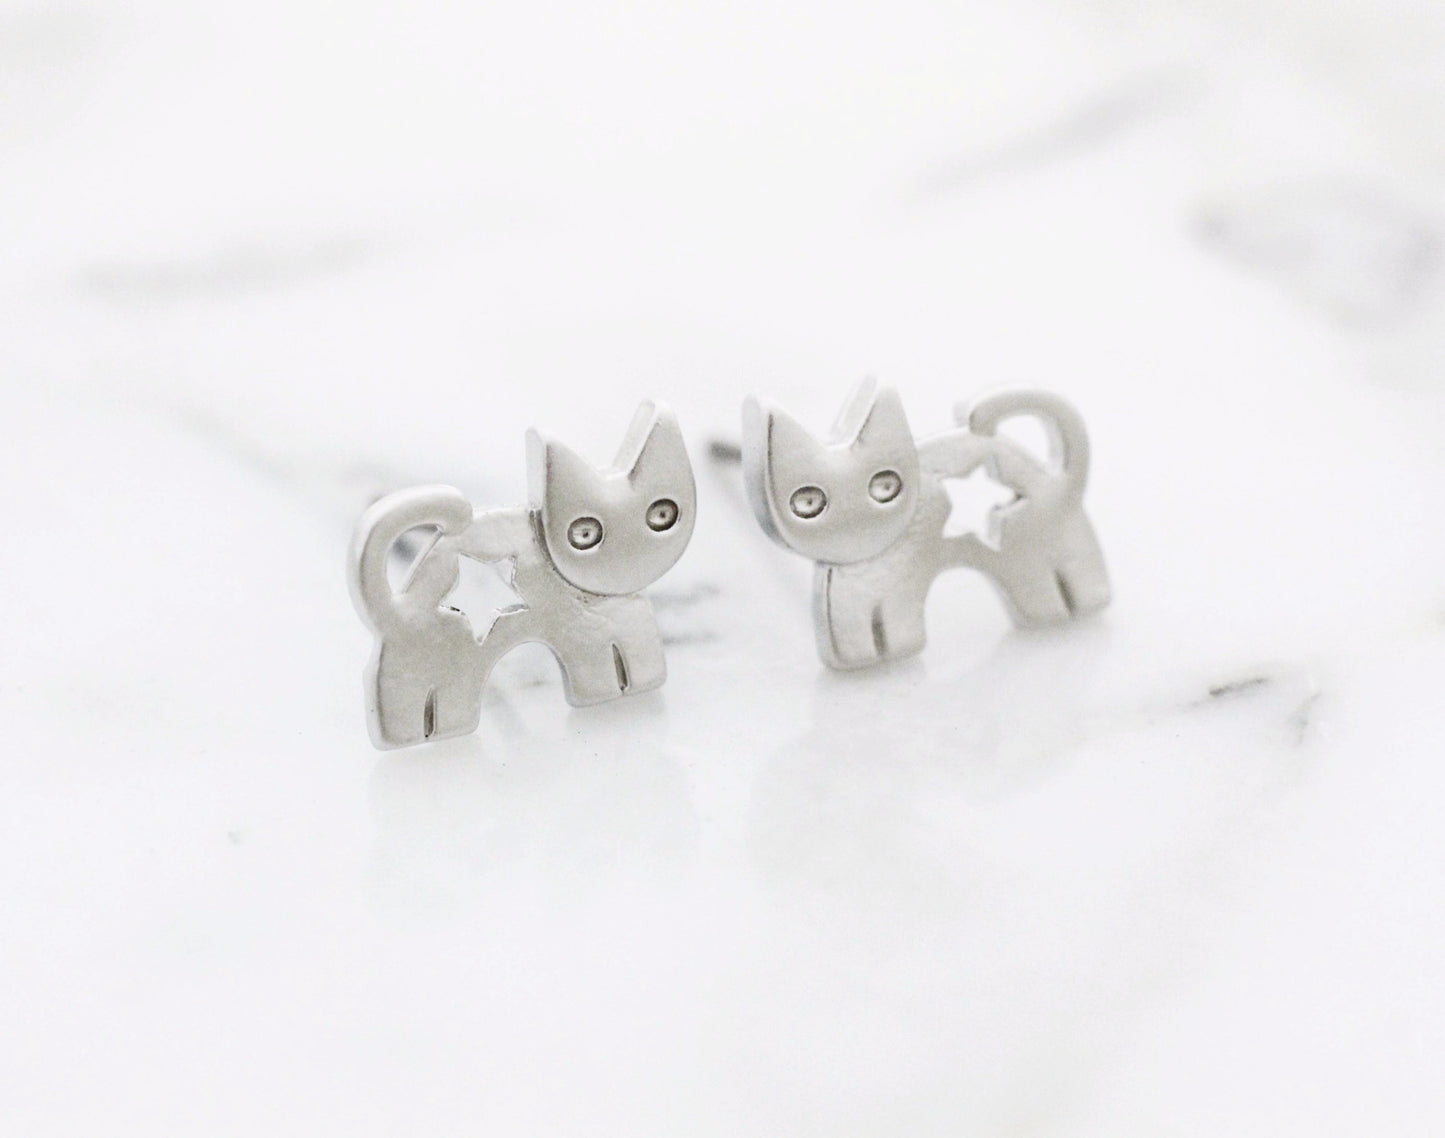 Cute Kitty cat stud earrings in 2 colors